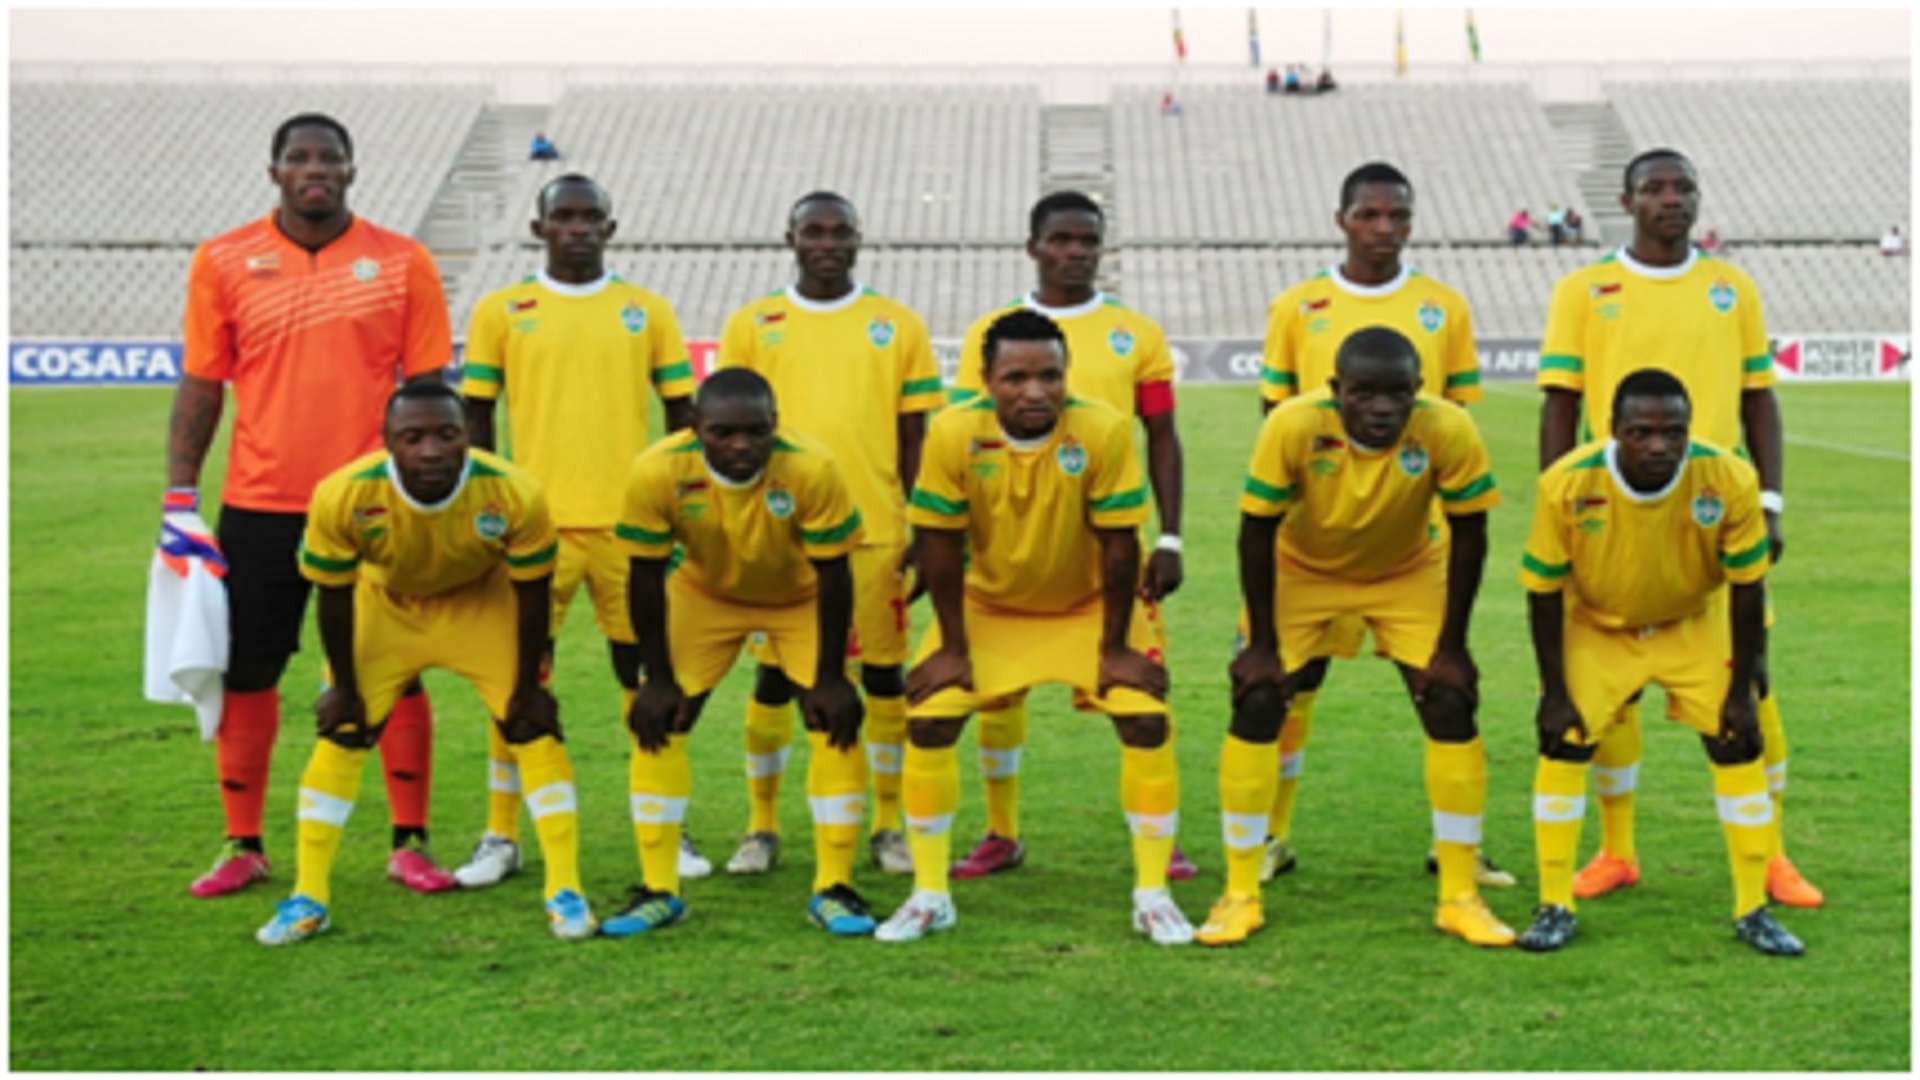 Zimbabwe Cosafa Cup 2015